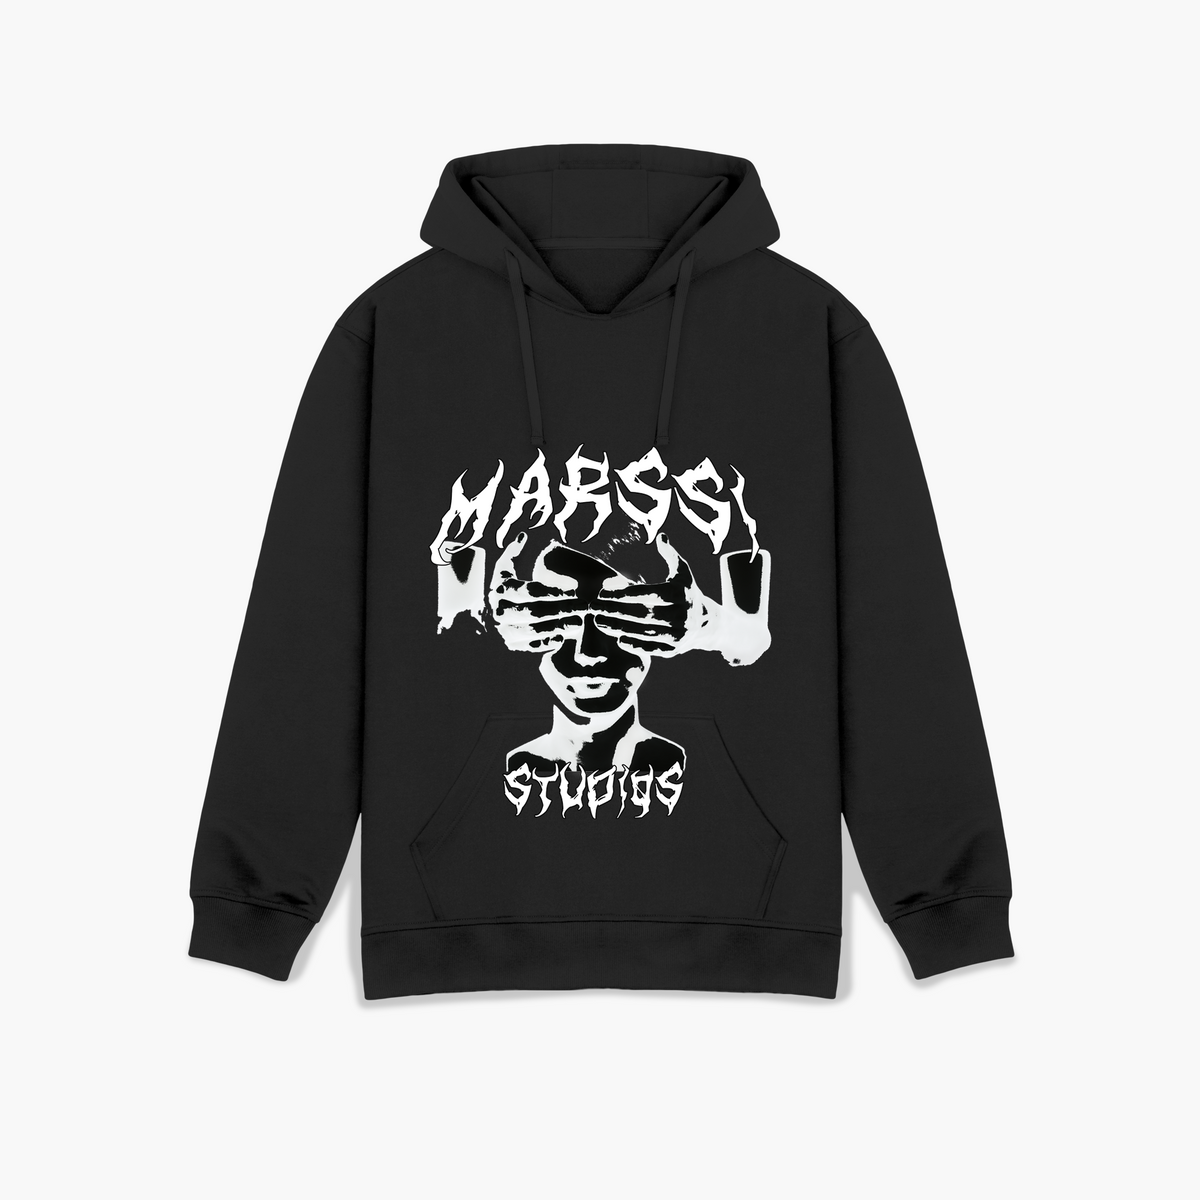 MARSSI Studios Hoodie